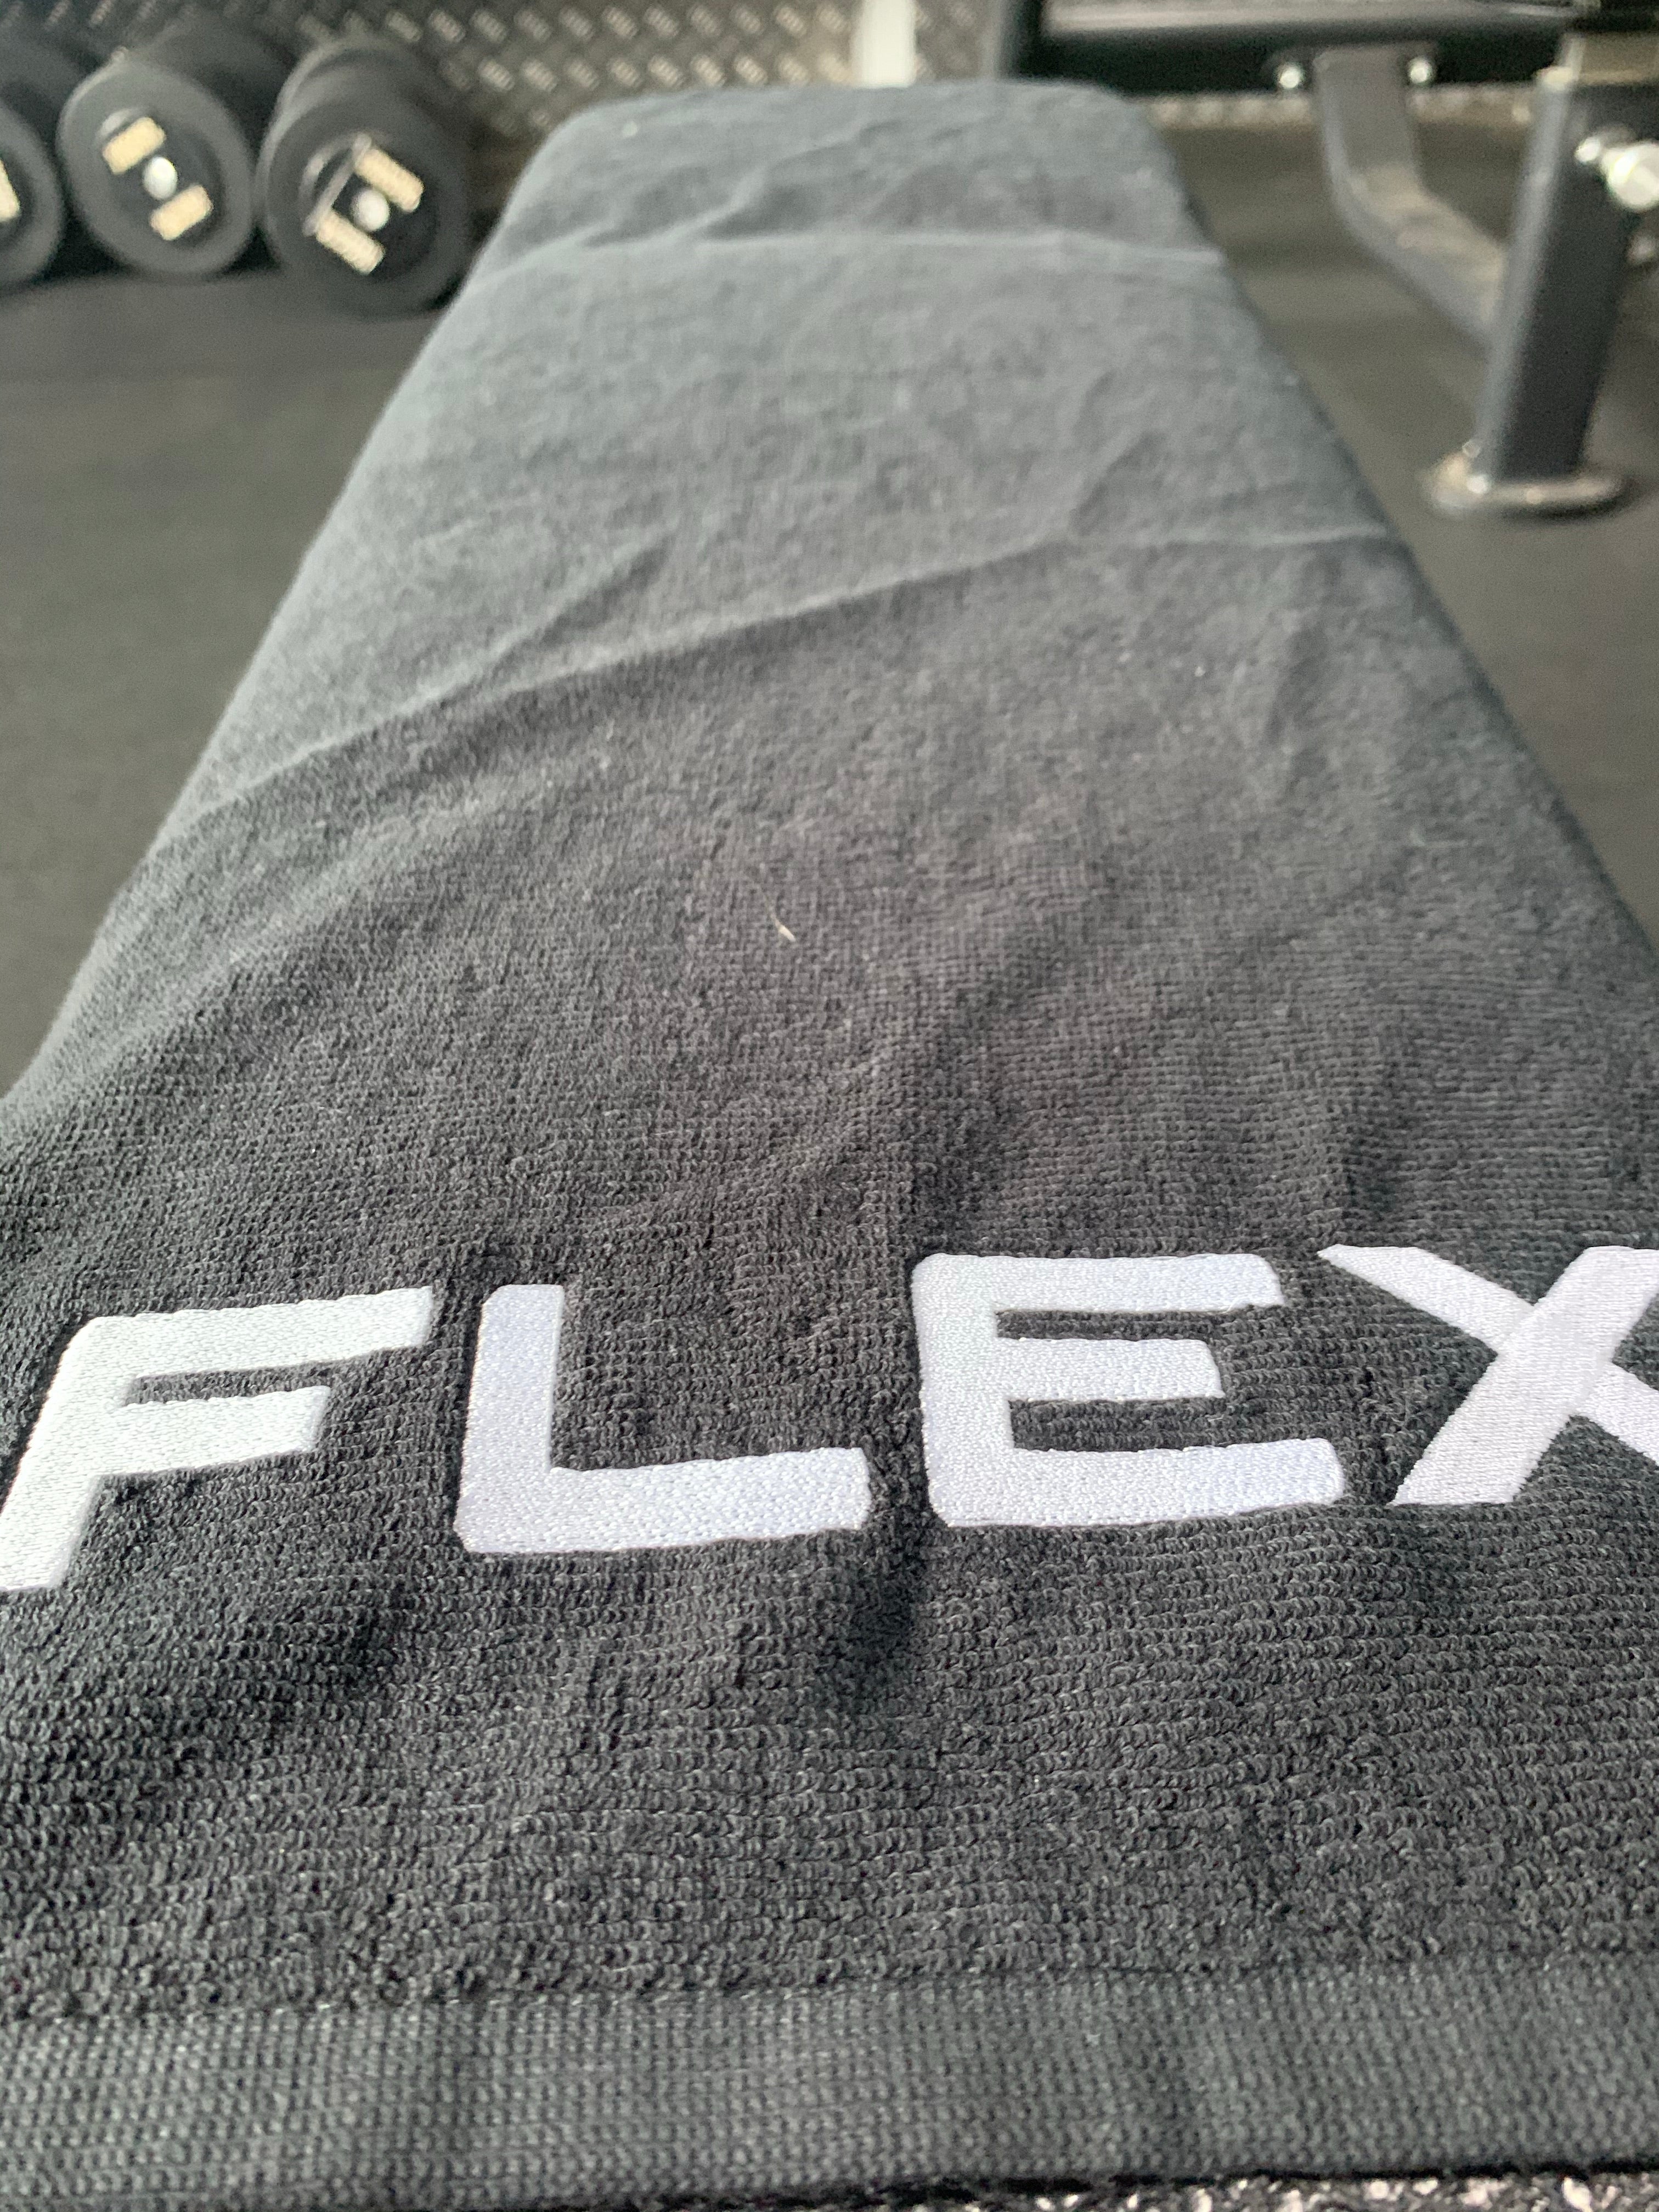 Flex Gym Towel - Flex Fitnesswear